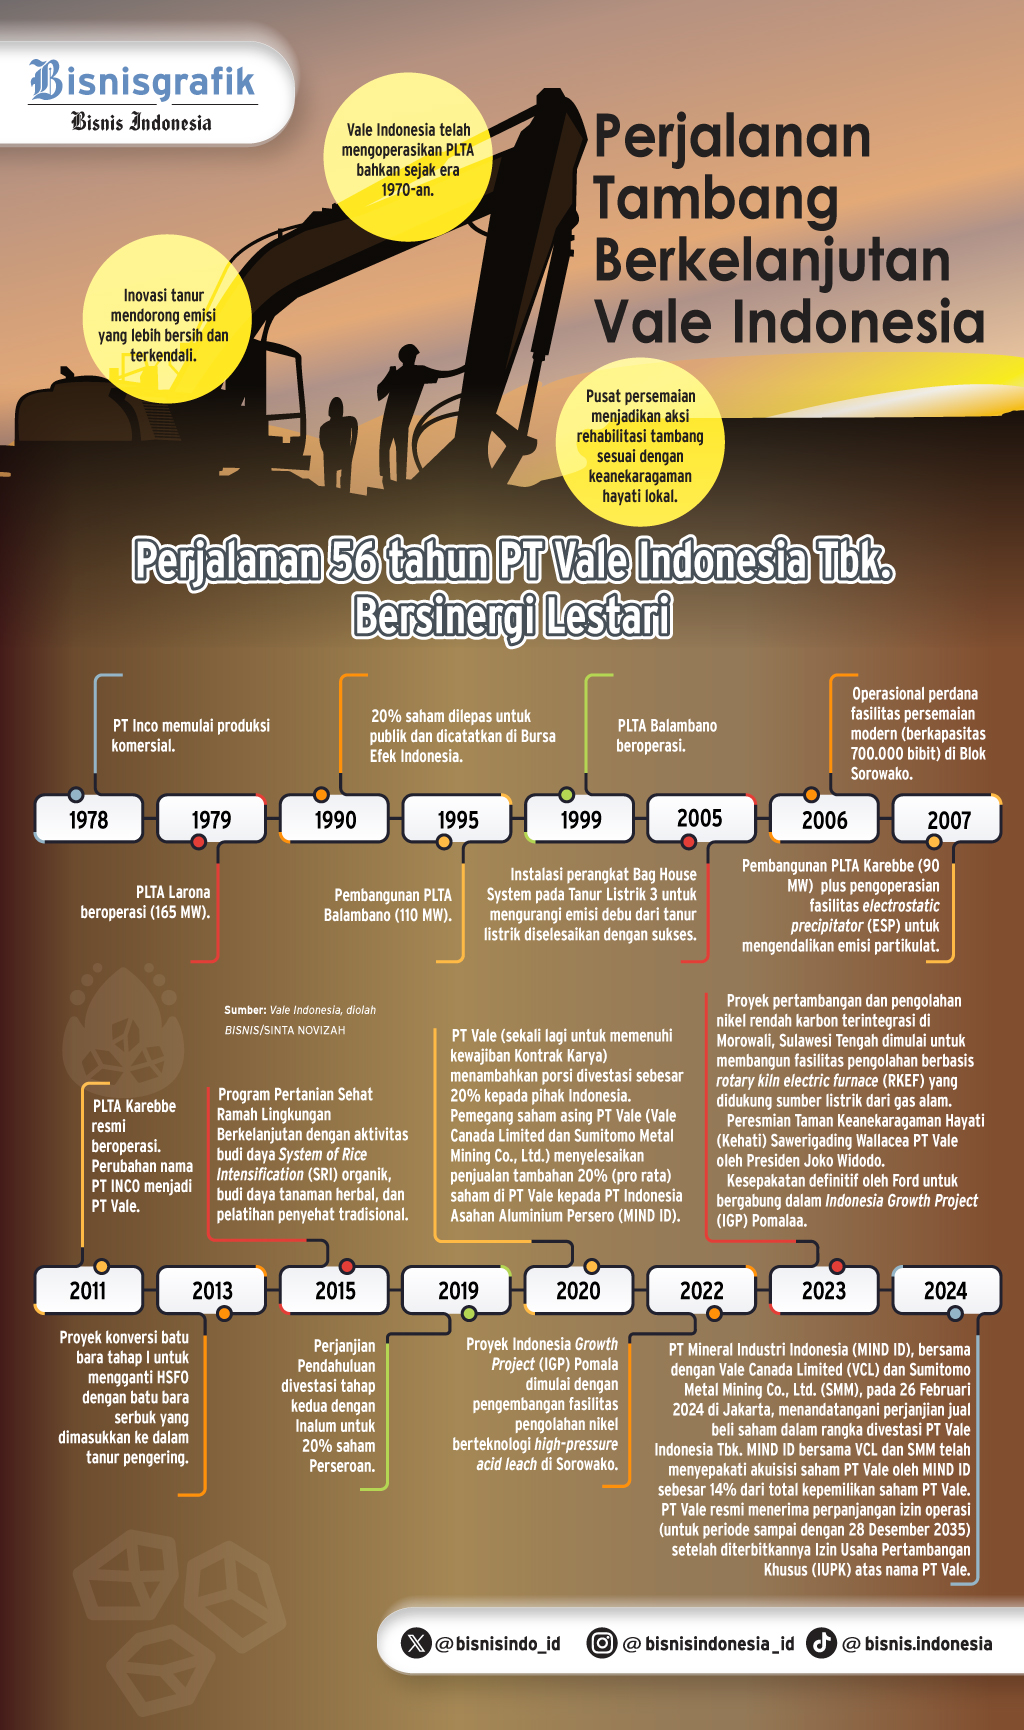 HUT KE-56 VALE INDONESIA : Nikel Bersih & Berkelanjutan di Jantung Sulawesi